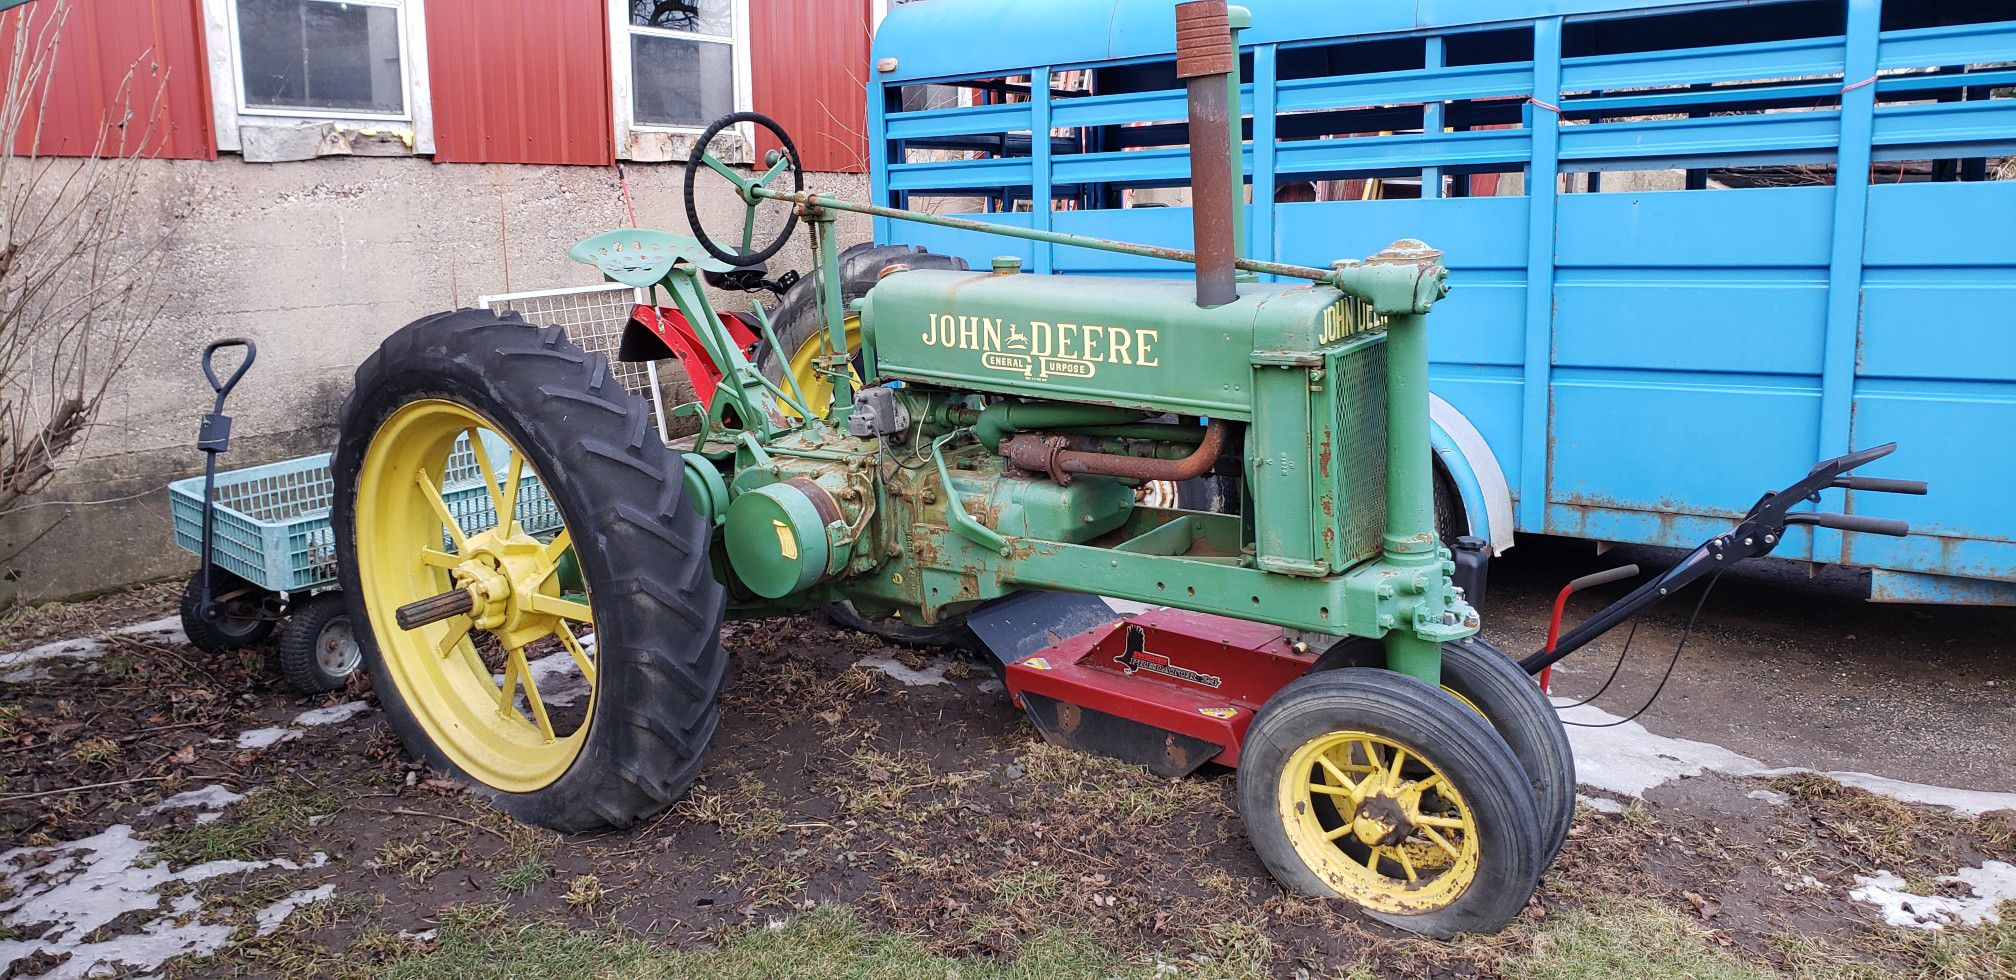 John Deere Antique tractor